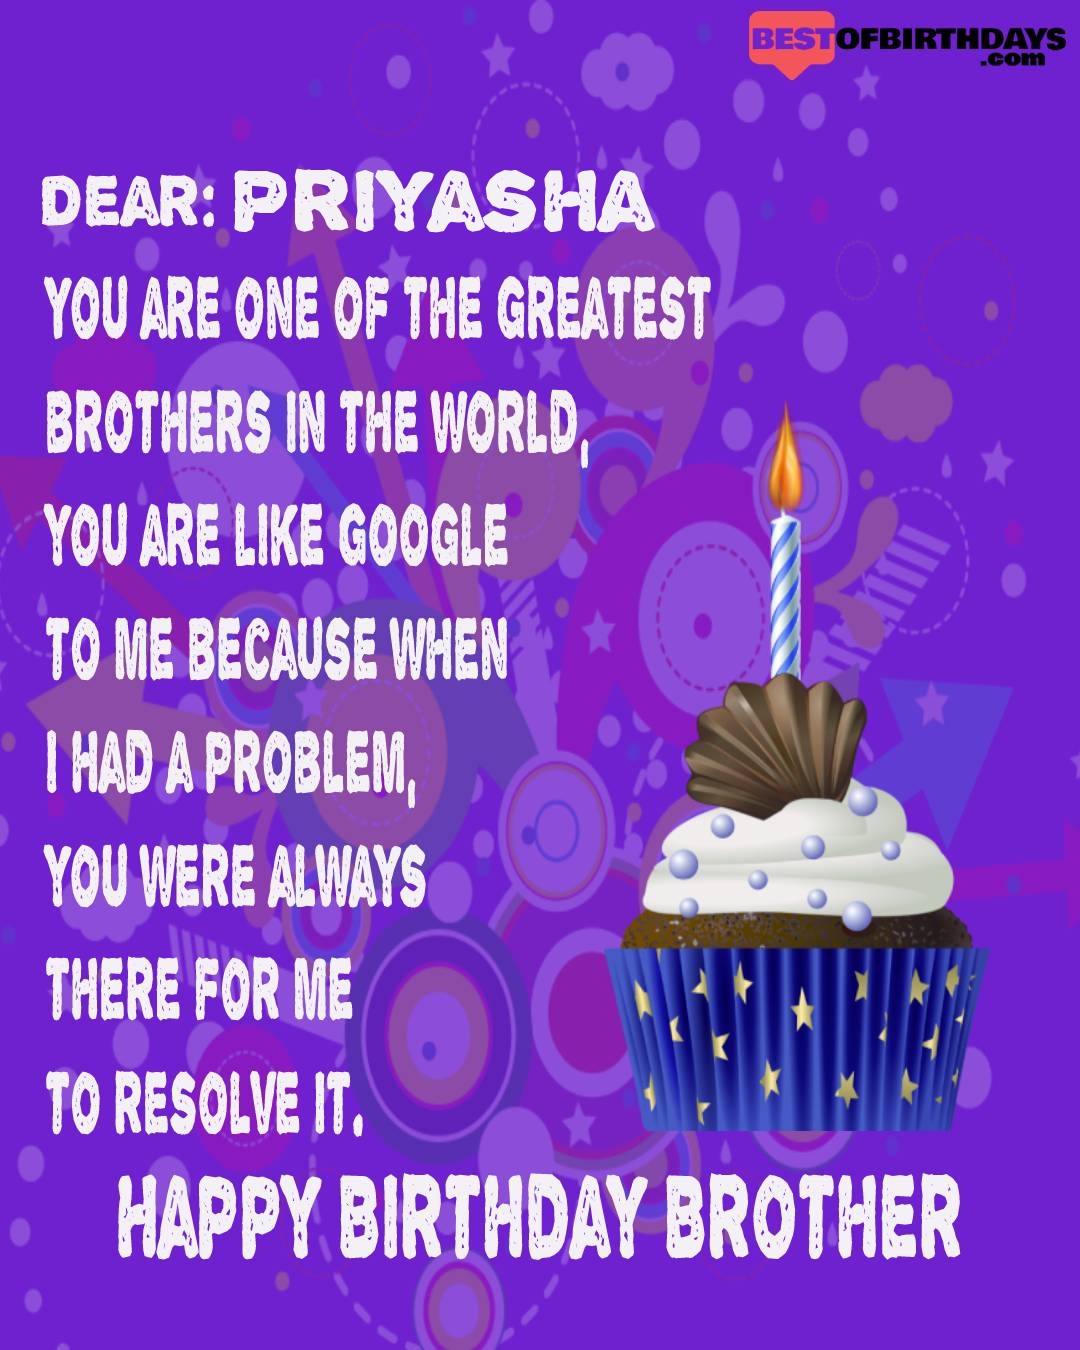 Happy birthday priyasha bhai brother bro